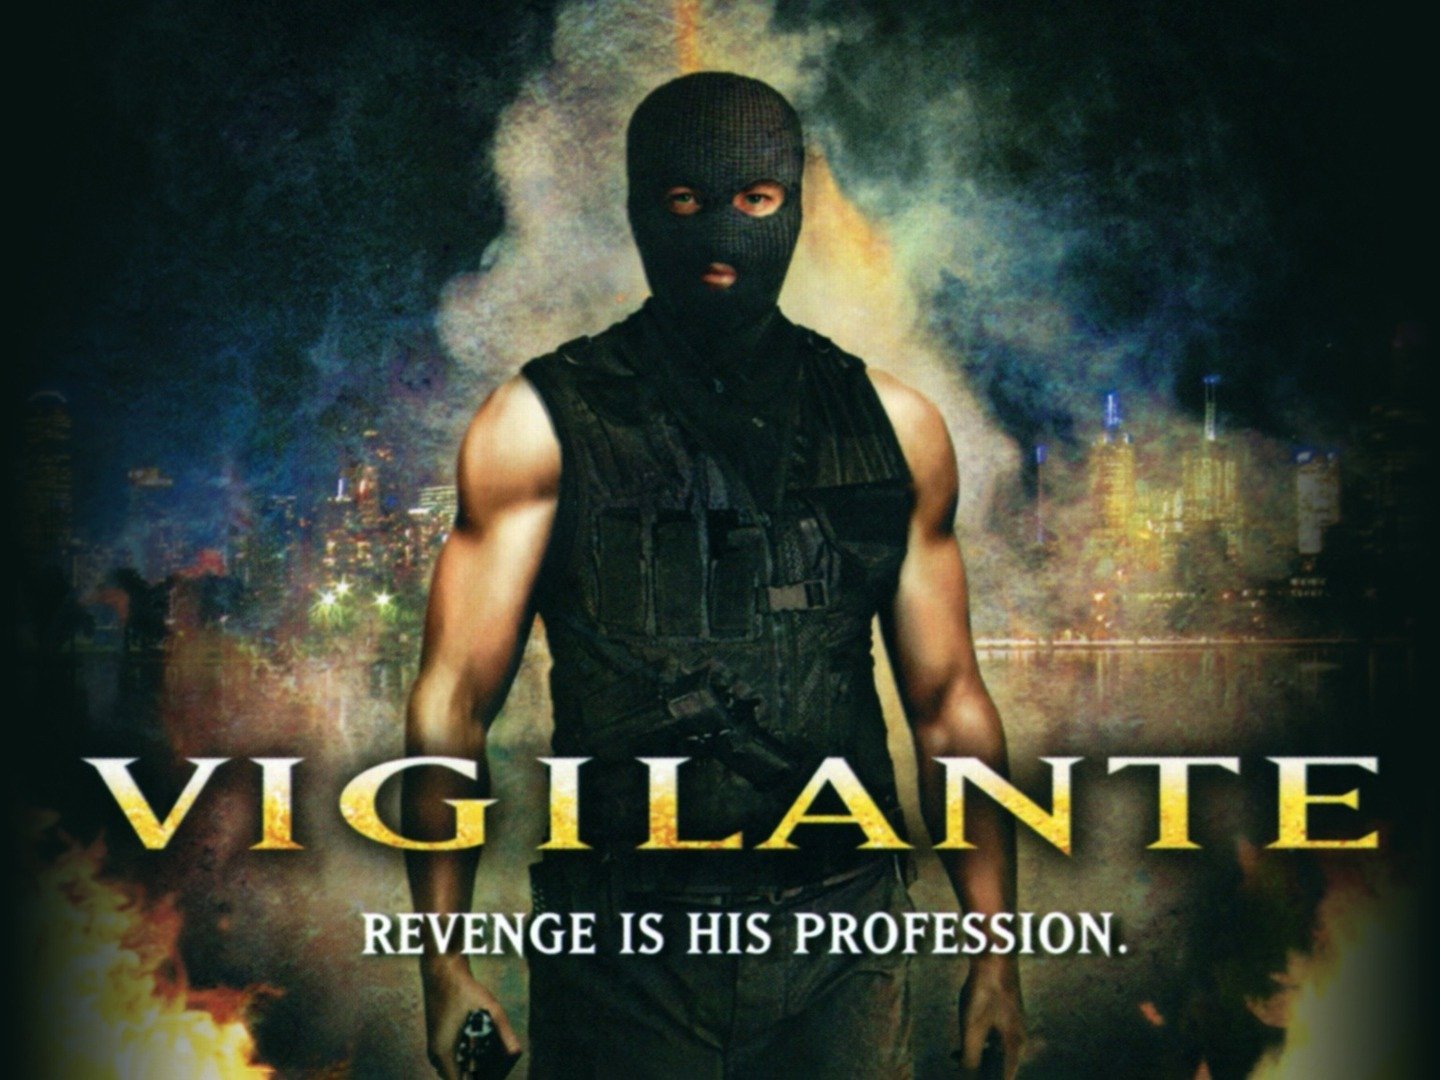 Vigilante (2008) Rotten Tomatoes